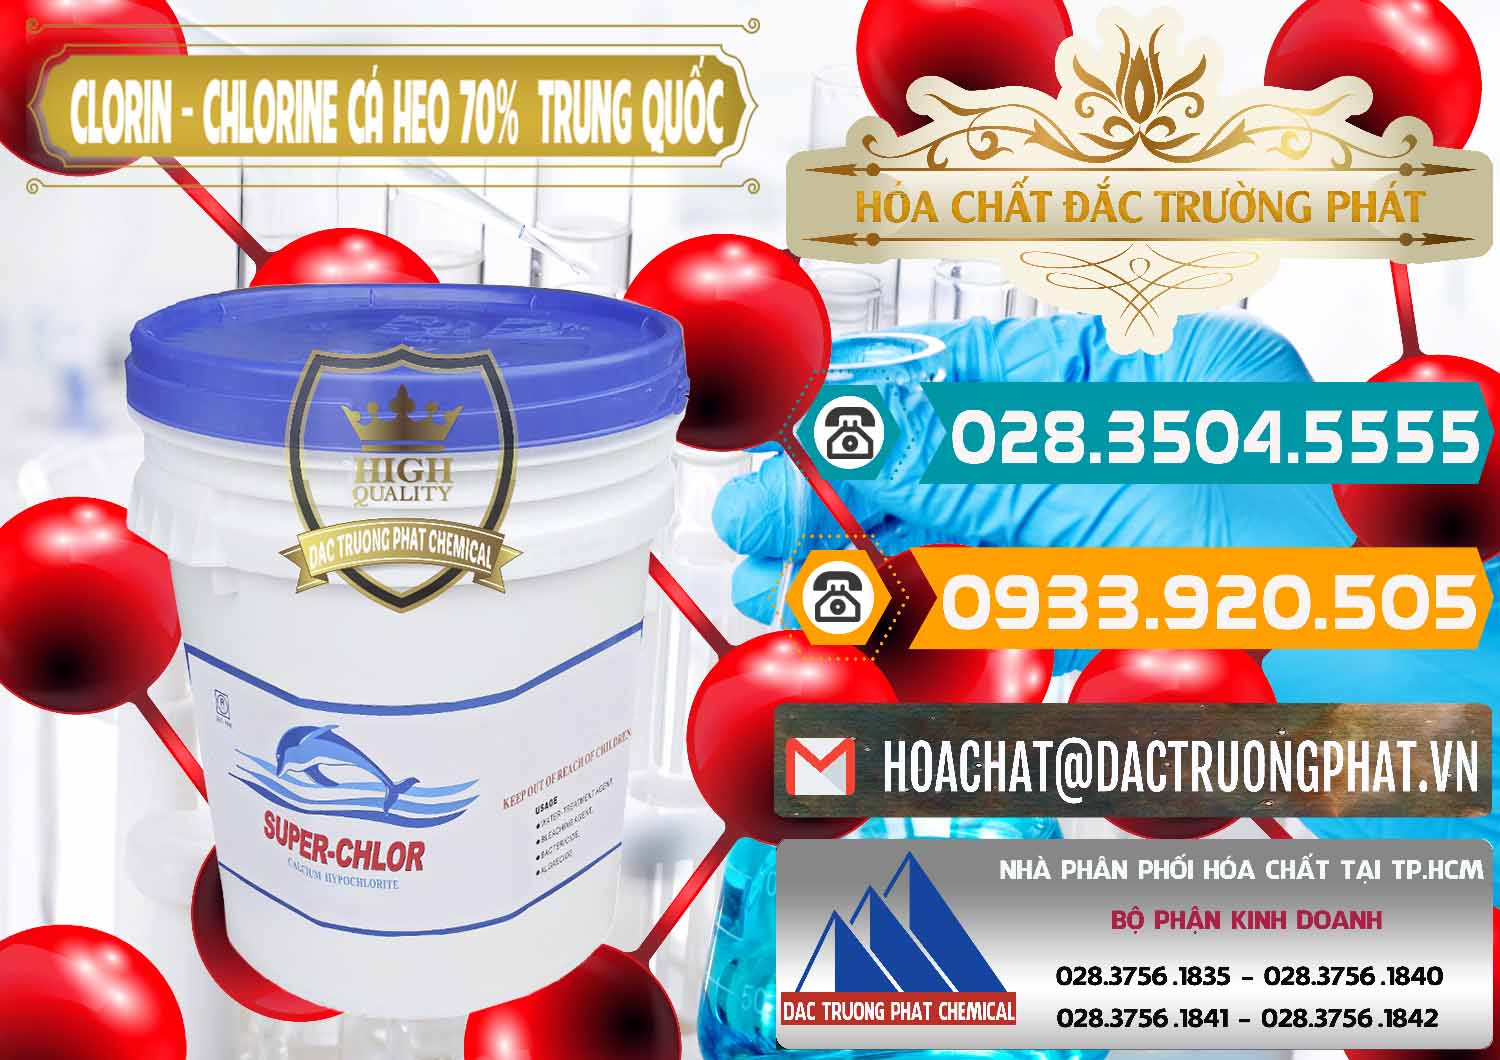 Công ty chuyên cung cấp & bán Clorin - Chlorine Cá Heo 70% Super Chlor Nắp Xanh Trung Quốc China - 0209 - Cty chuyên cung cấp và bán hóa chất tại TP.HCM - congtyhoachat.vn